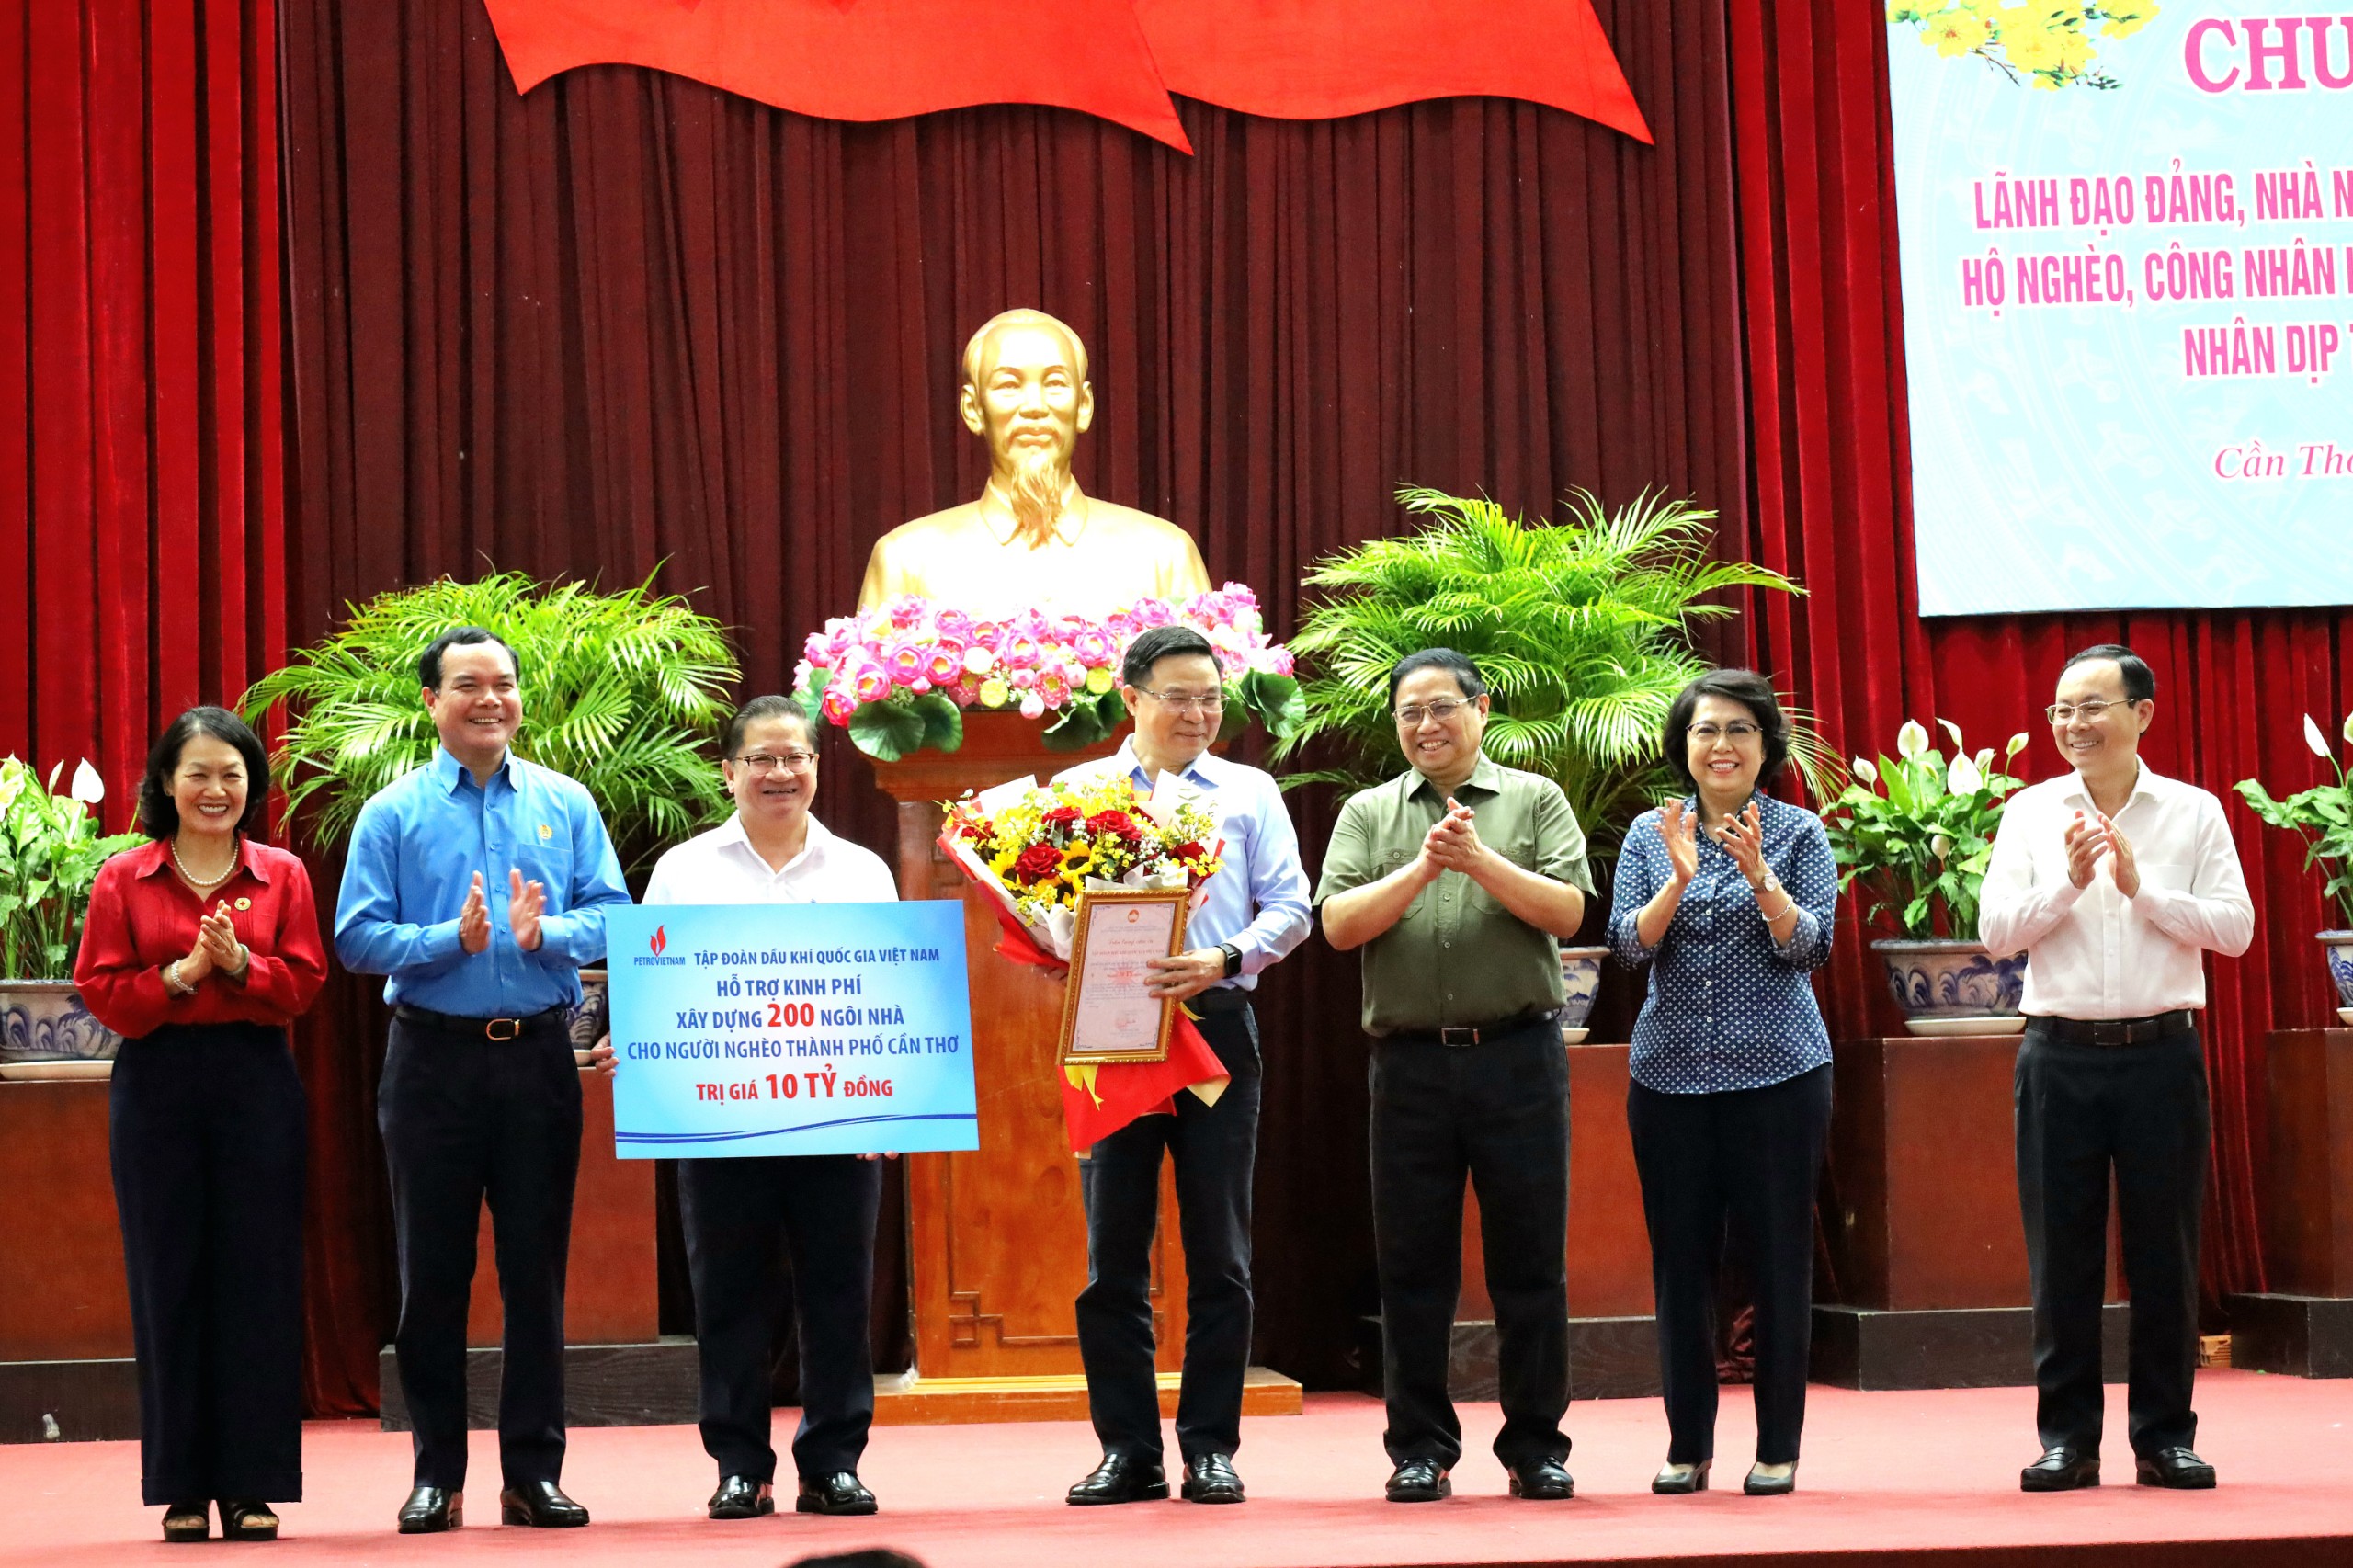 Thủ tướng Chính phủ Phạm Minh Chính tặng hoa cho ông Lê Mạnh Hùng - Chủ tịch HĐTV Tập đoàn Dầu khí Việt Nam - Petrovietnam.